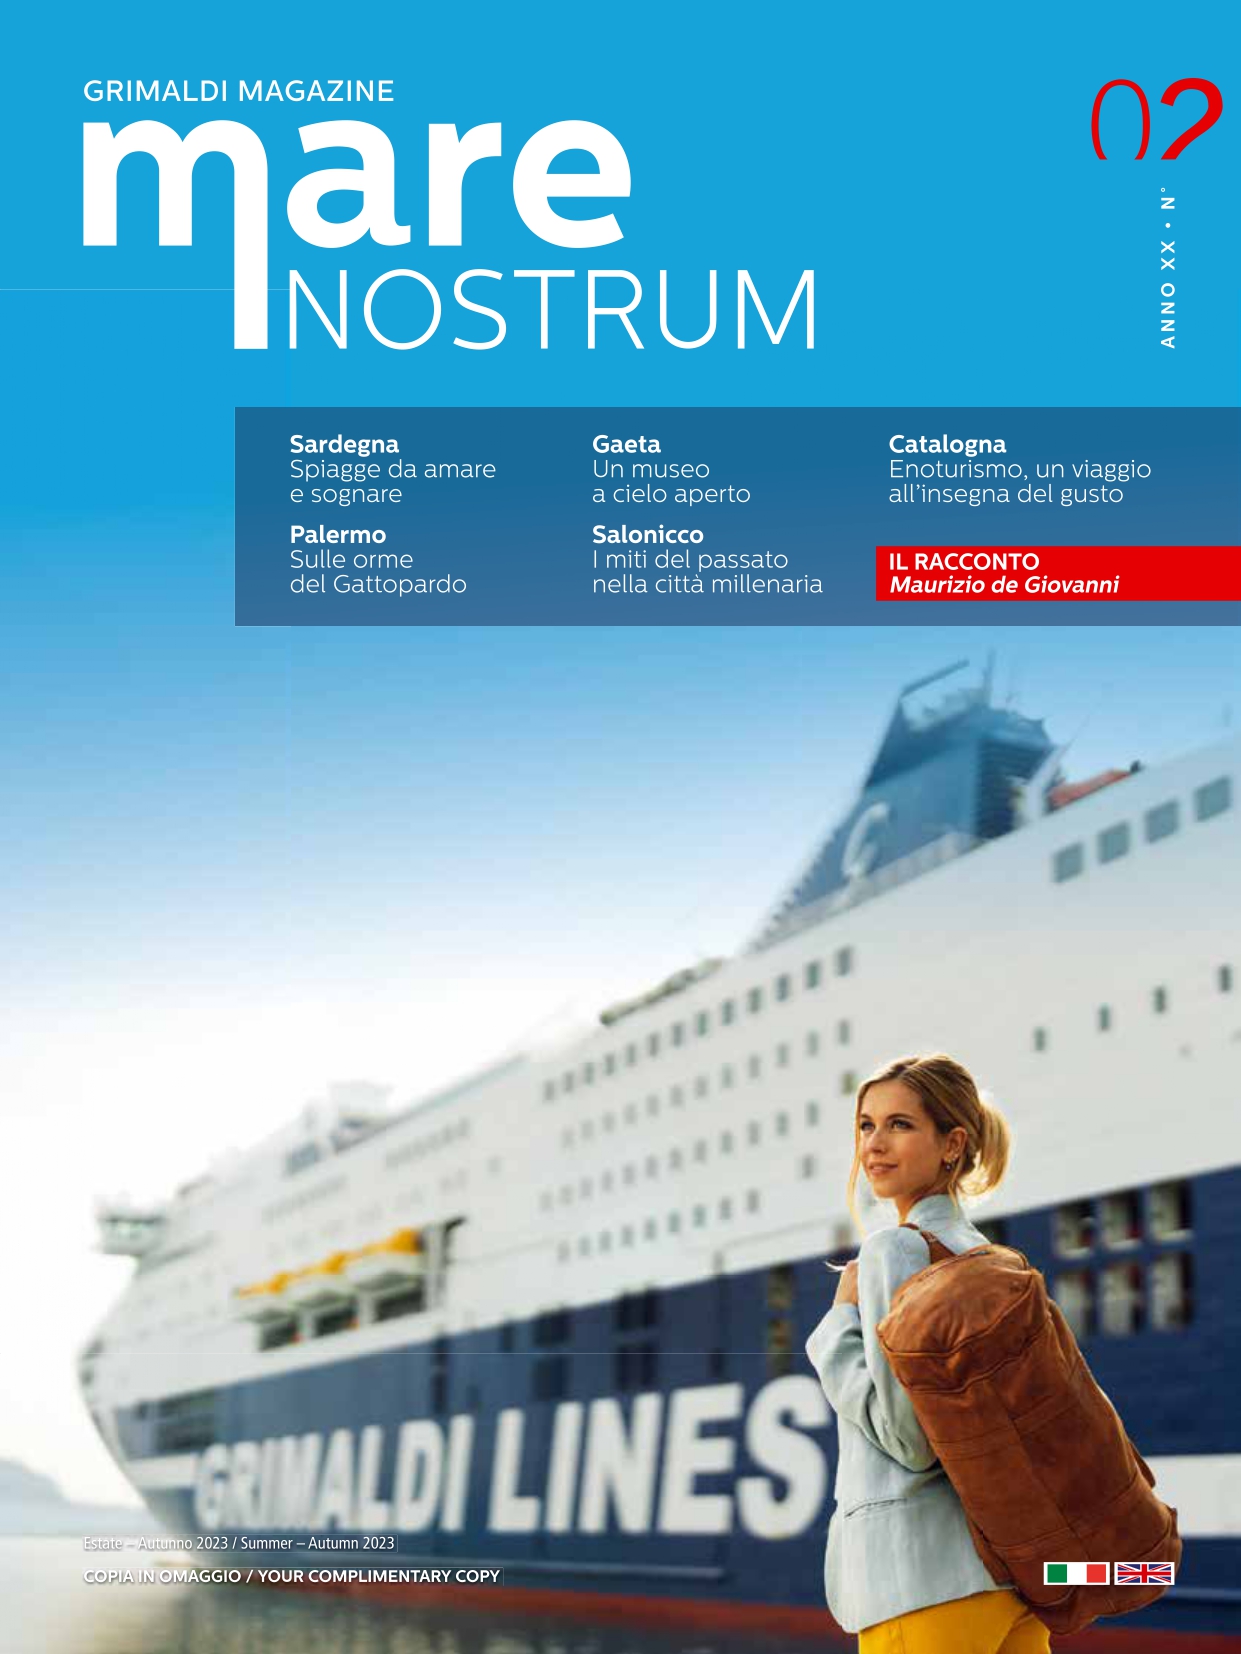 Grimaldi Magazine Mare Nostrum (Anno XX n. 2) Italiano-Inglese